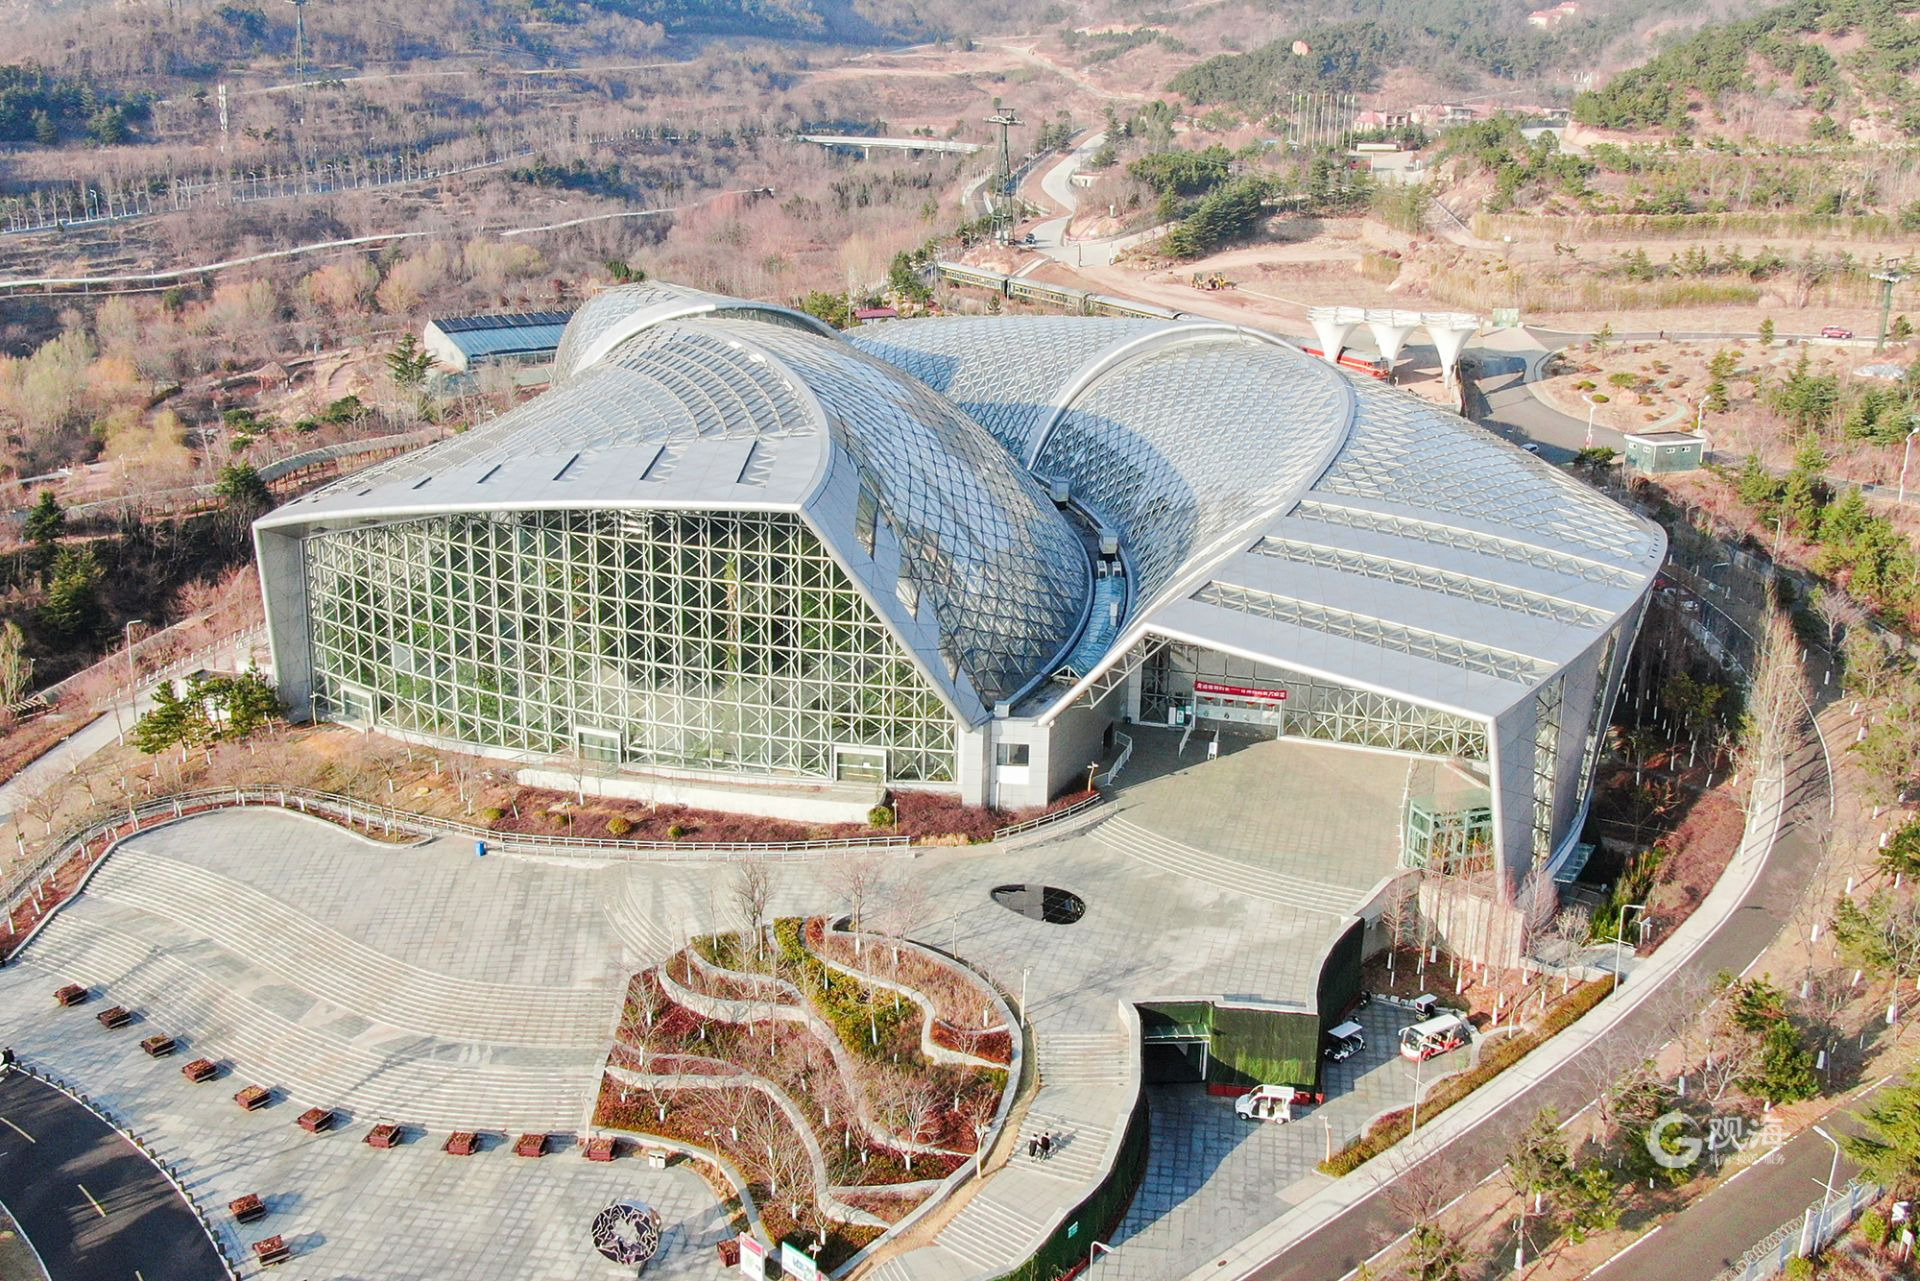 1/7青岛世博园植物馆位于园区东北侧,是一座内集科普,科研,展示展览与